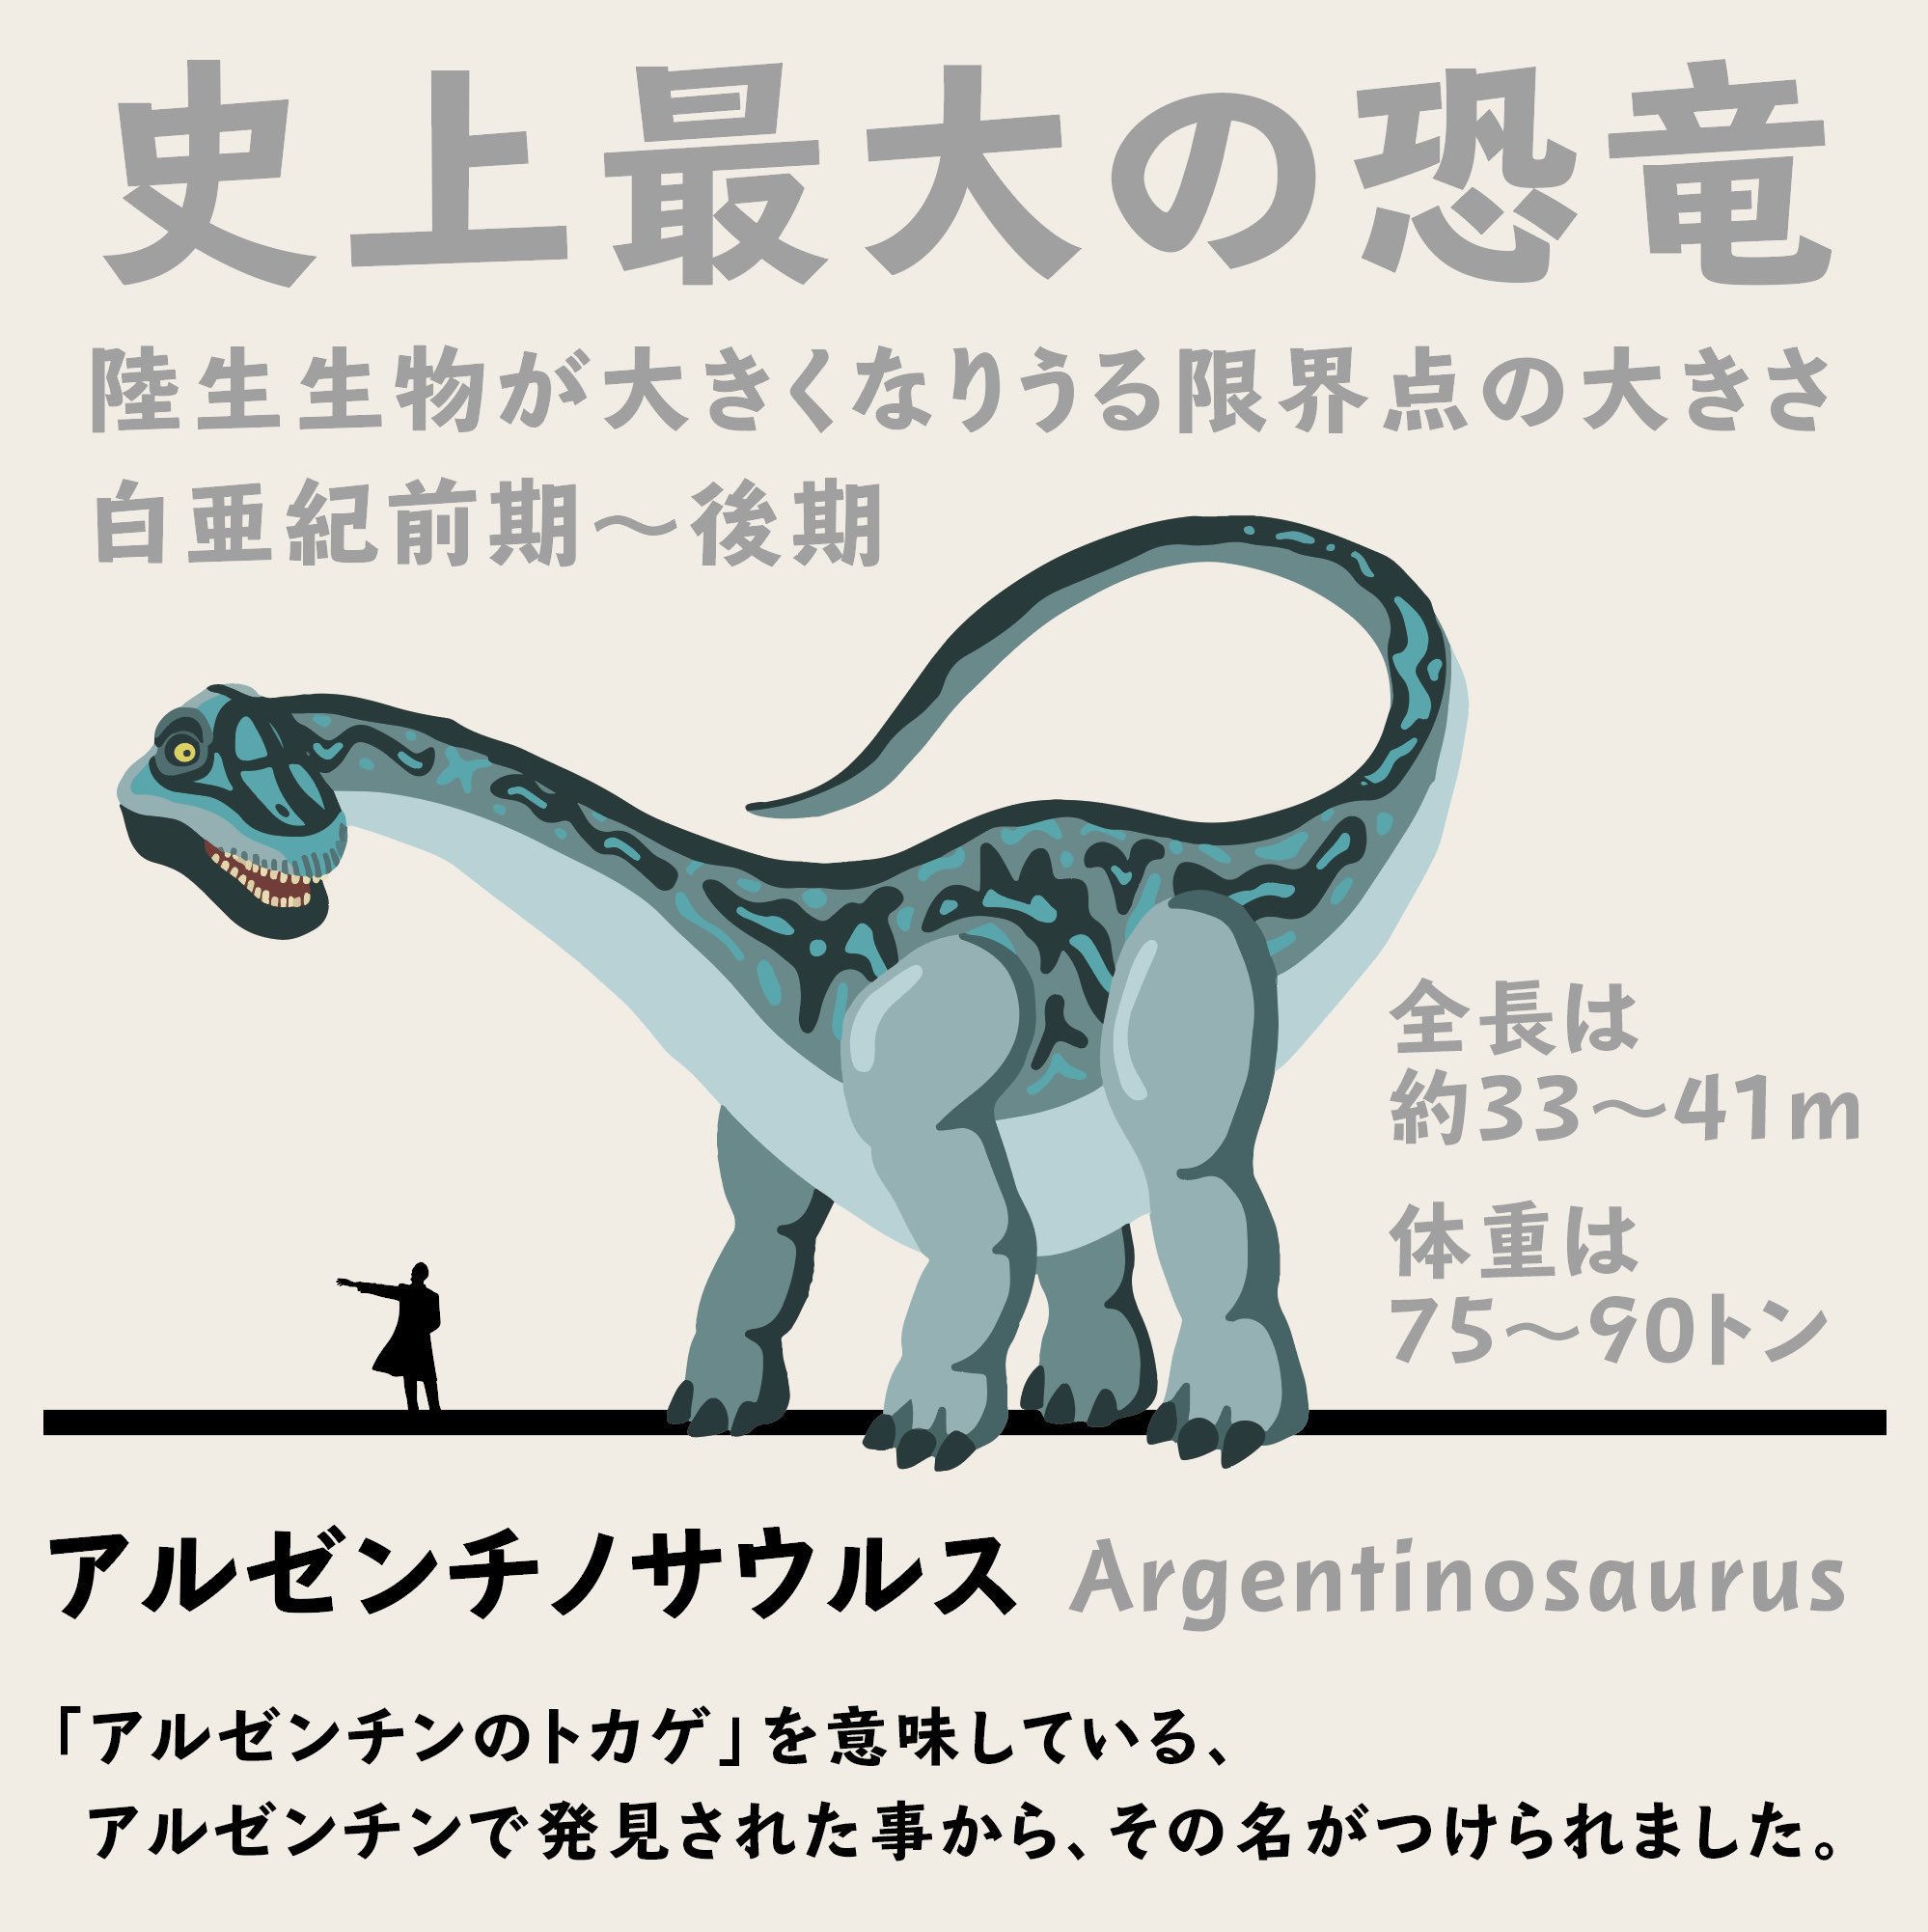 ケータ 恐竜イラストレーター No 38 Argentinosaurs アルゼンチノサウルス 史上最大のデカさであっただろう アルゼンチノサウルス アフリカゾウ10頭分に相当するんだって象 アルゼンチノサウルス Argentinosaurus